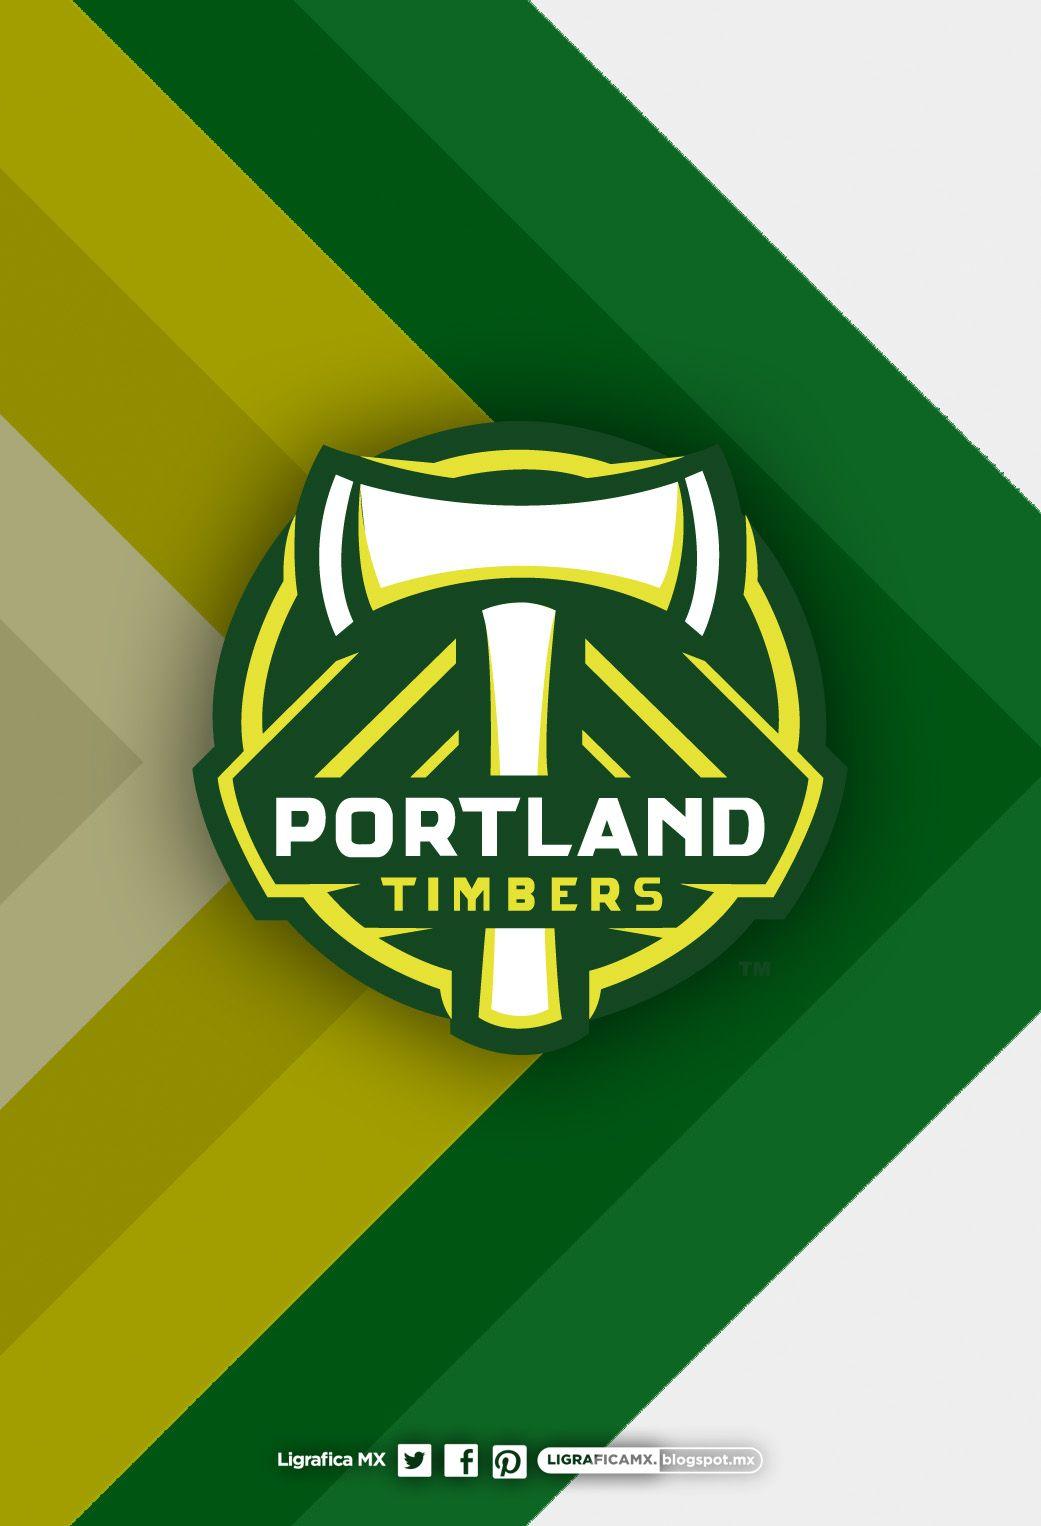 Portland #Timbers 020214CTG(2) LigraficaMX. Soccer